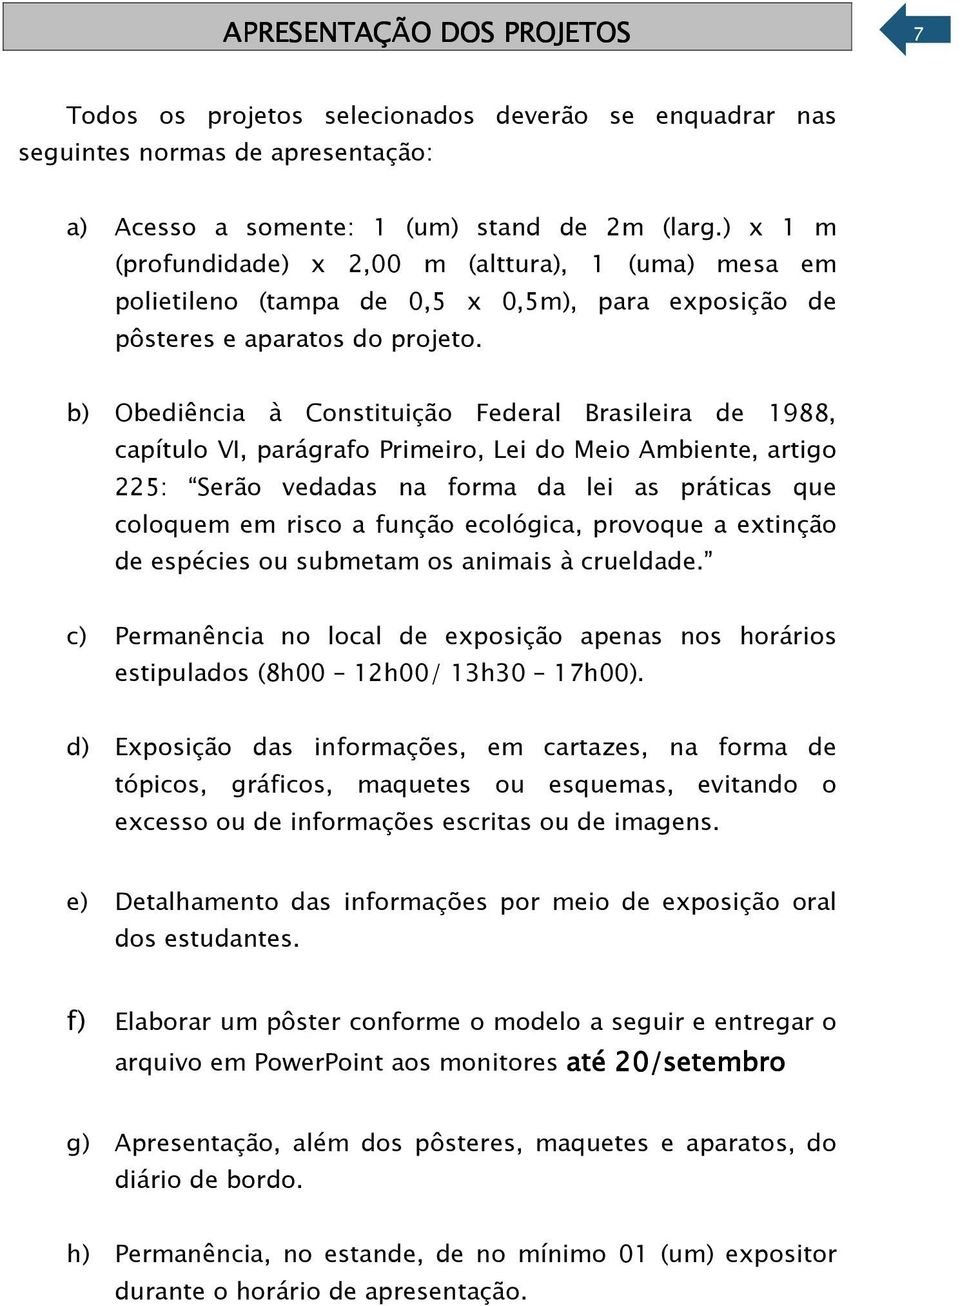 b) Obediência à Constituição Federal Brasileira de 1988, capítulo VI, parágrafo Primeiro, Lei do Meio Ambiente, artigo 225: Serão vedadas na forma da lei as práticas que coloquem em risco a função